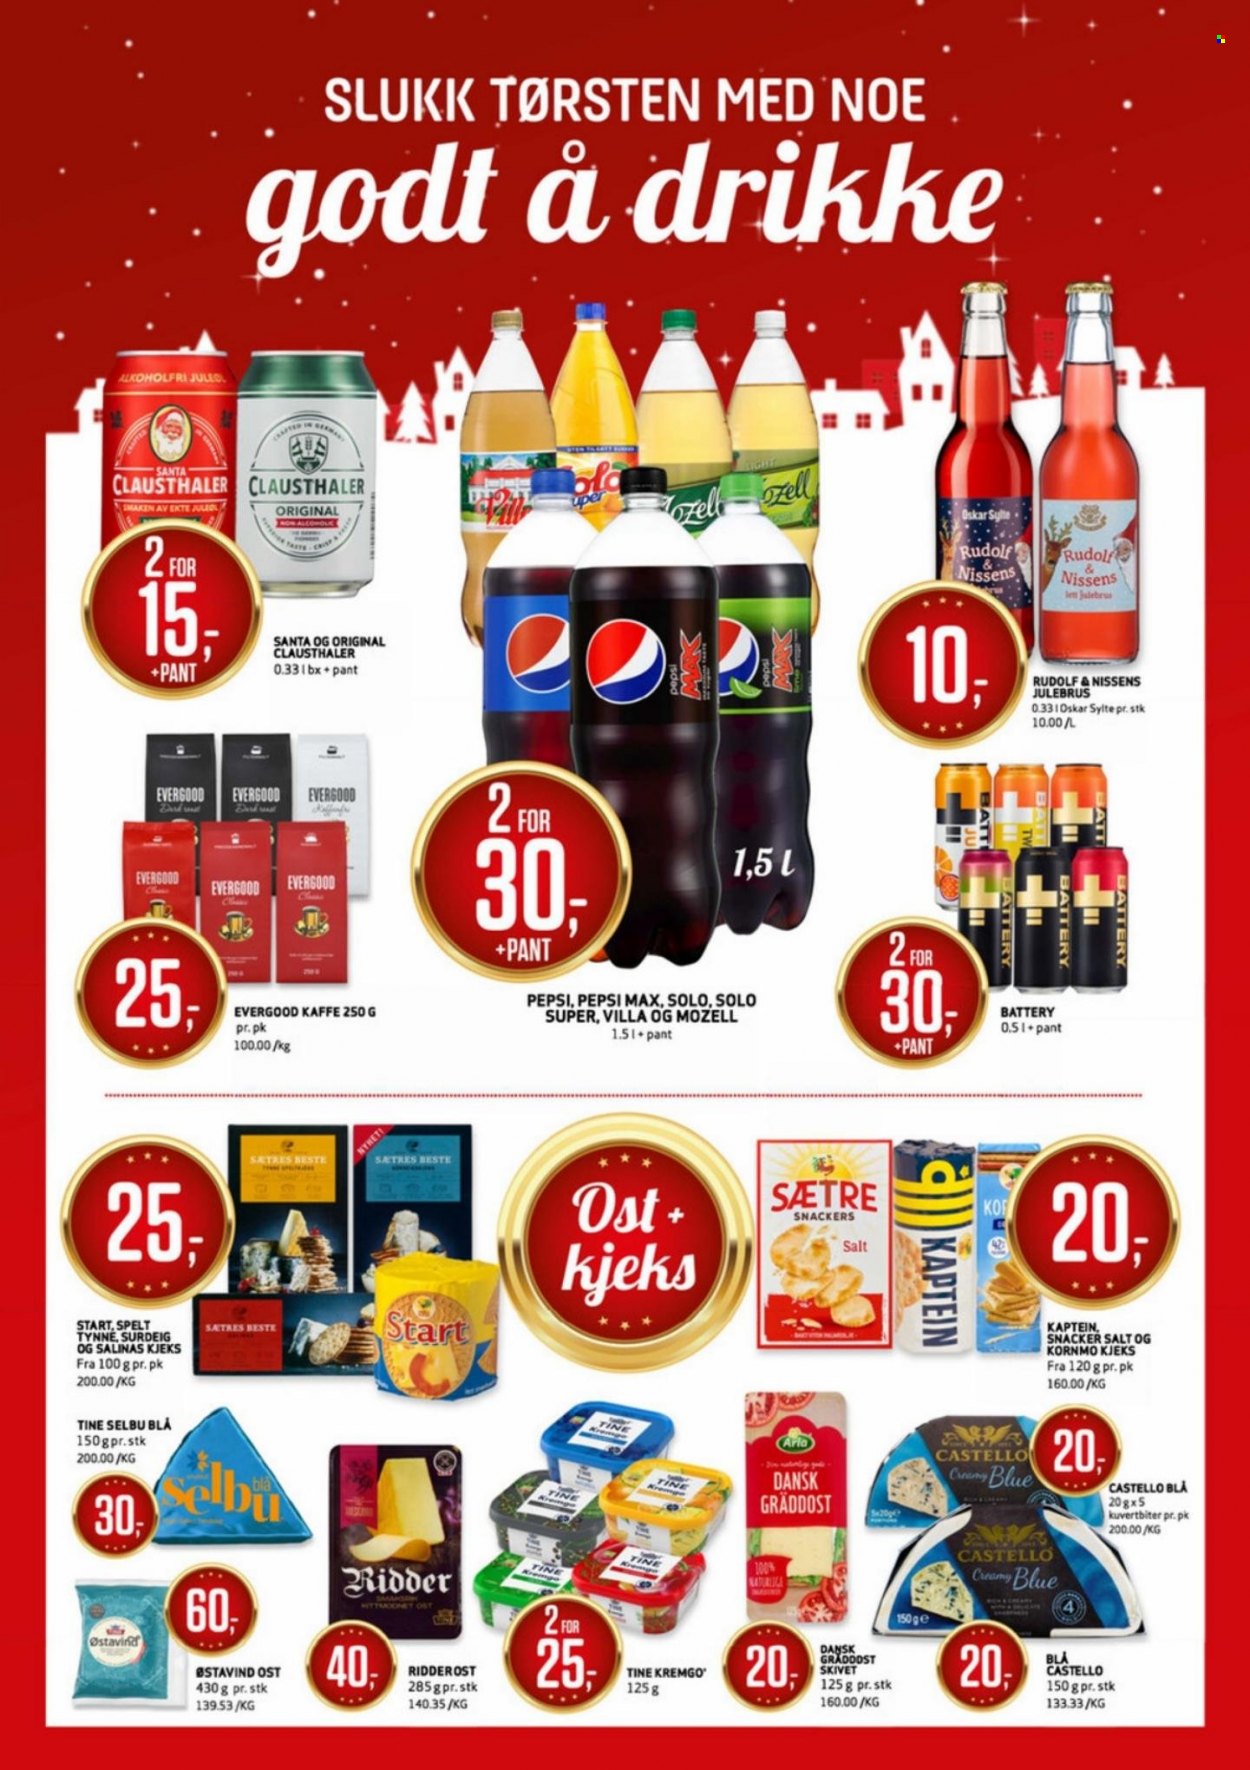 thumbnail - Kundeavis Bunnpris - 29.11.2021 - 12.12.2021 - Produkter fra tilbudsaviser - sylte, ost, ridderost, kjeks, Arla, surdeig, spelt, Pepsi, Pepsi Max. Side 7.